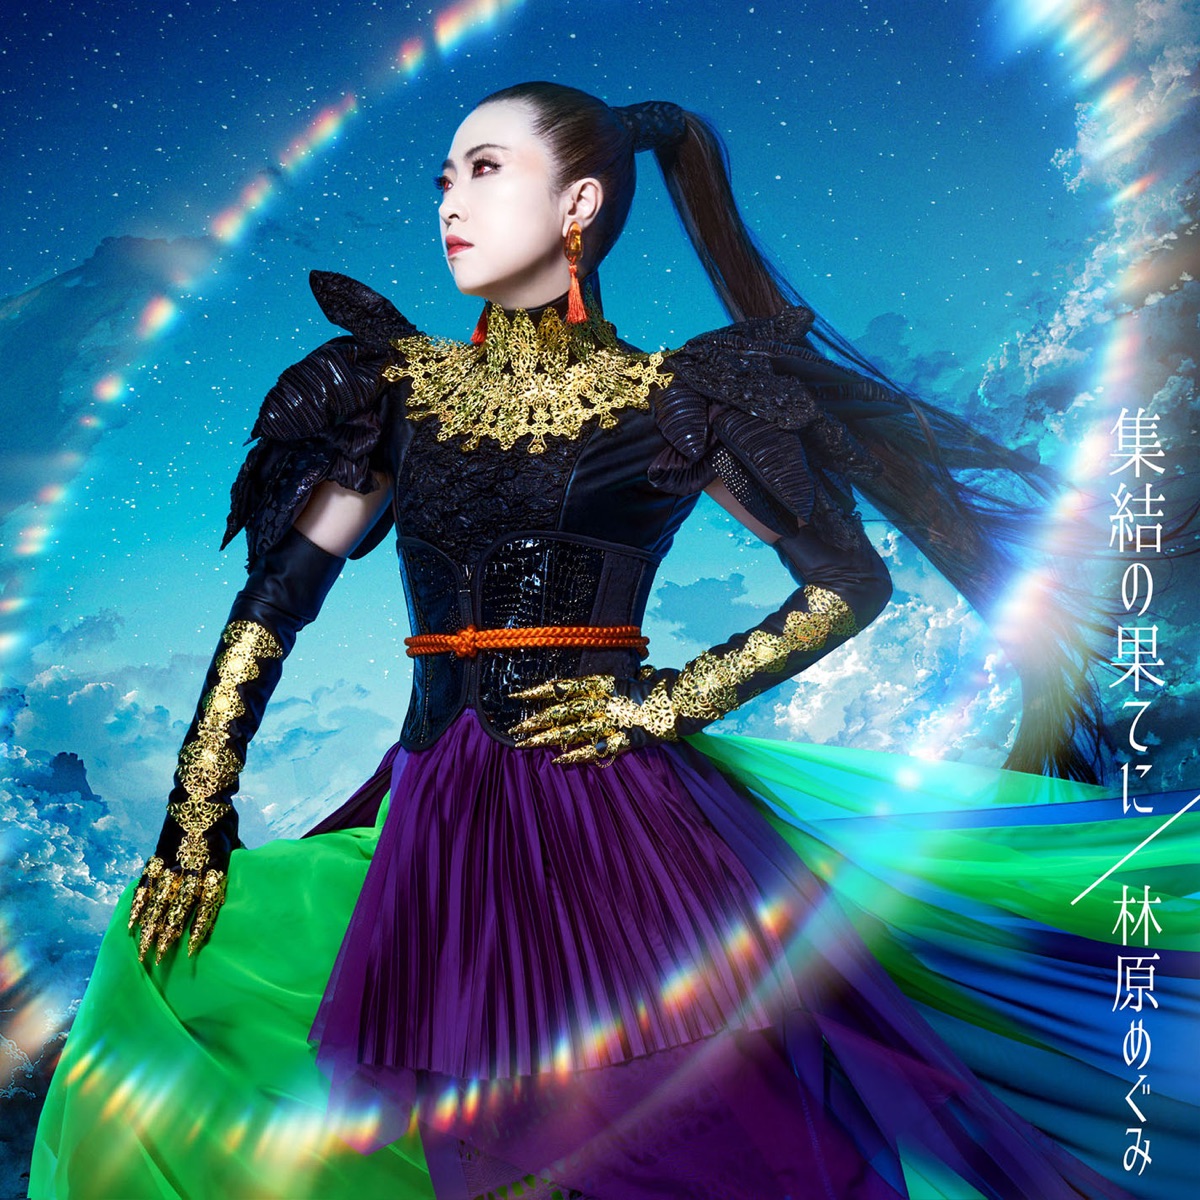 Cover art for『Megumi Hayashibara - Shuuketsu no Hate ni』from the release『Shuuketsu no Hate ni』